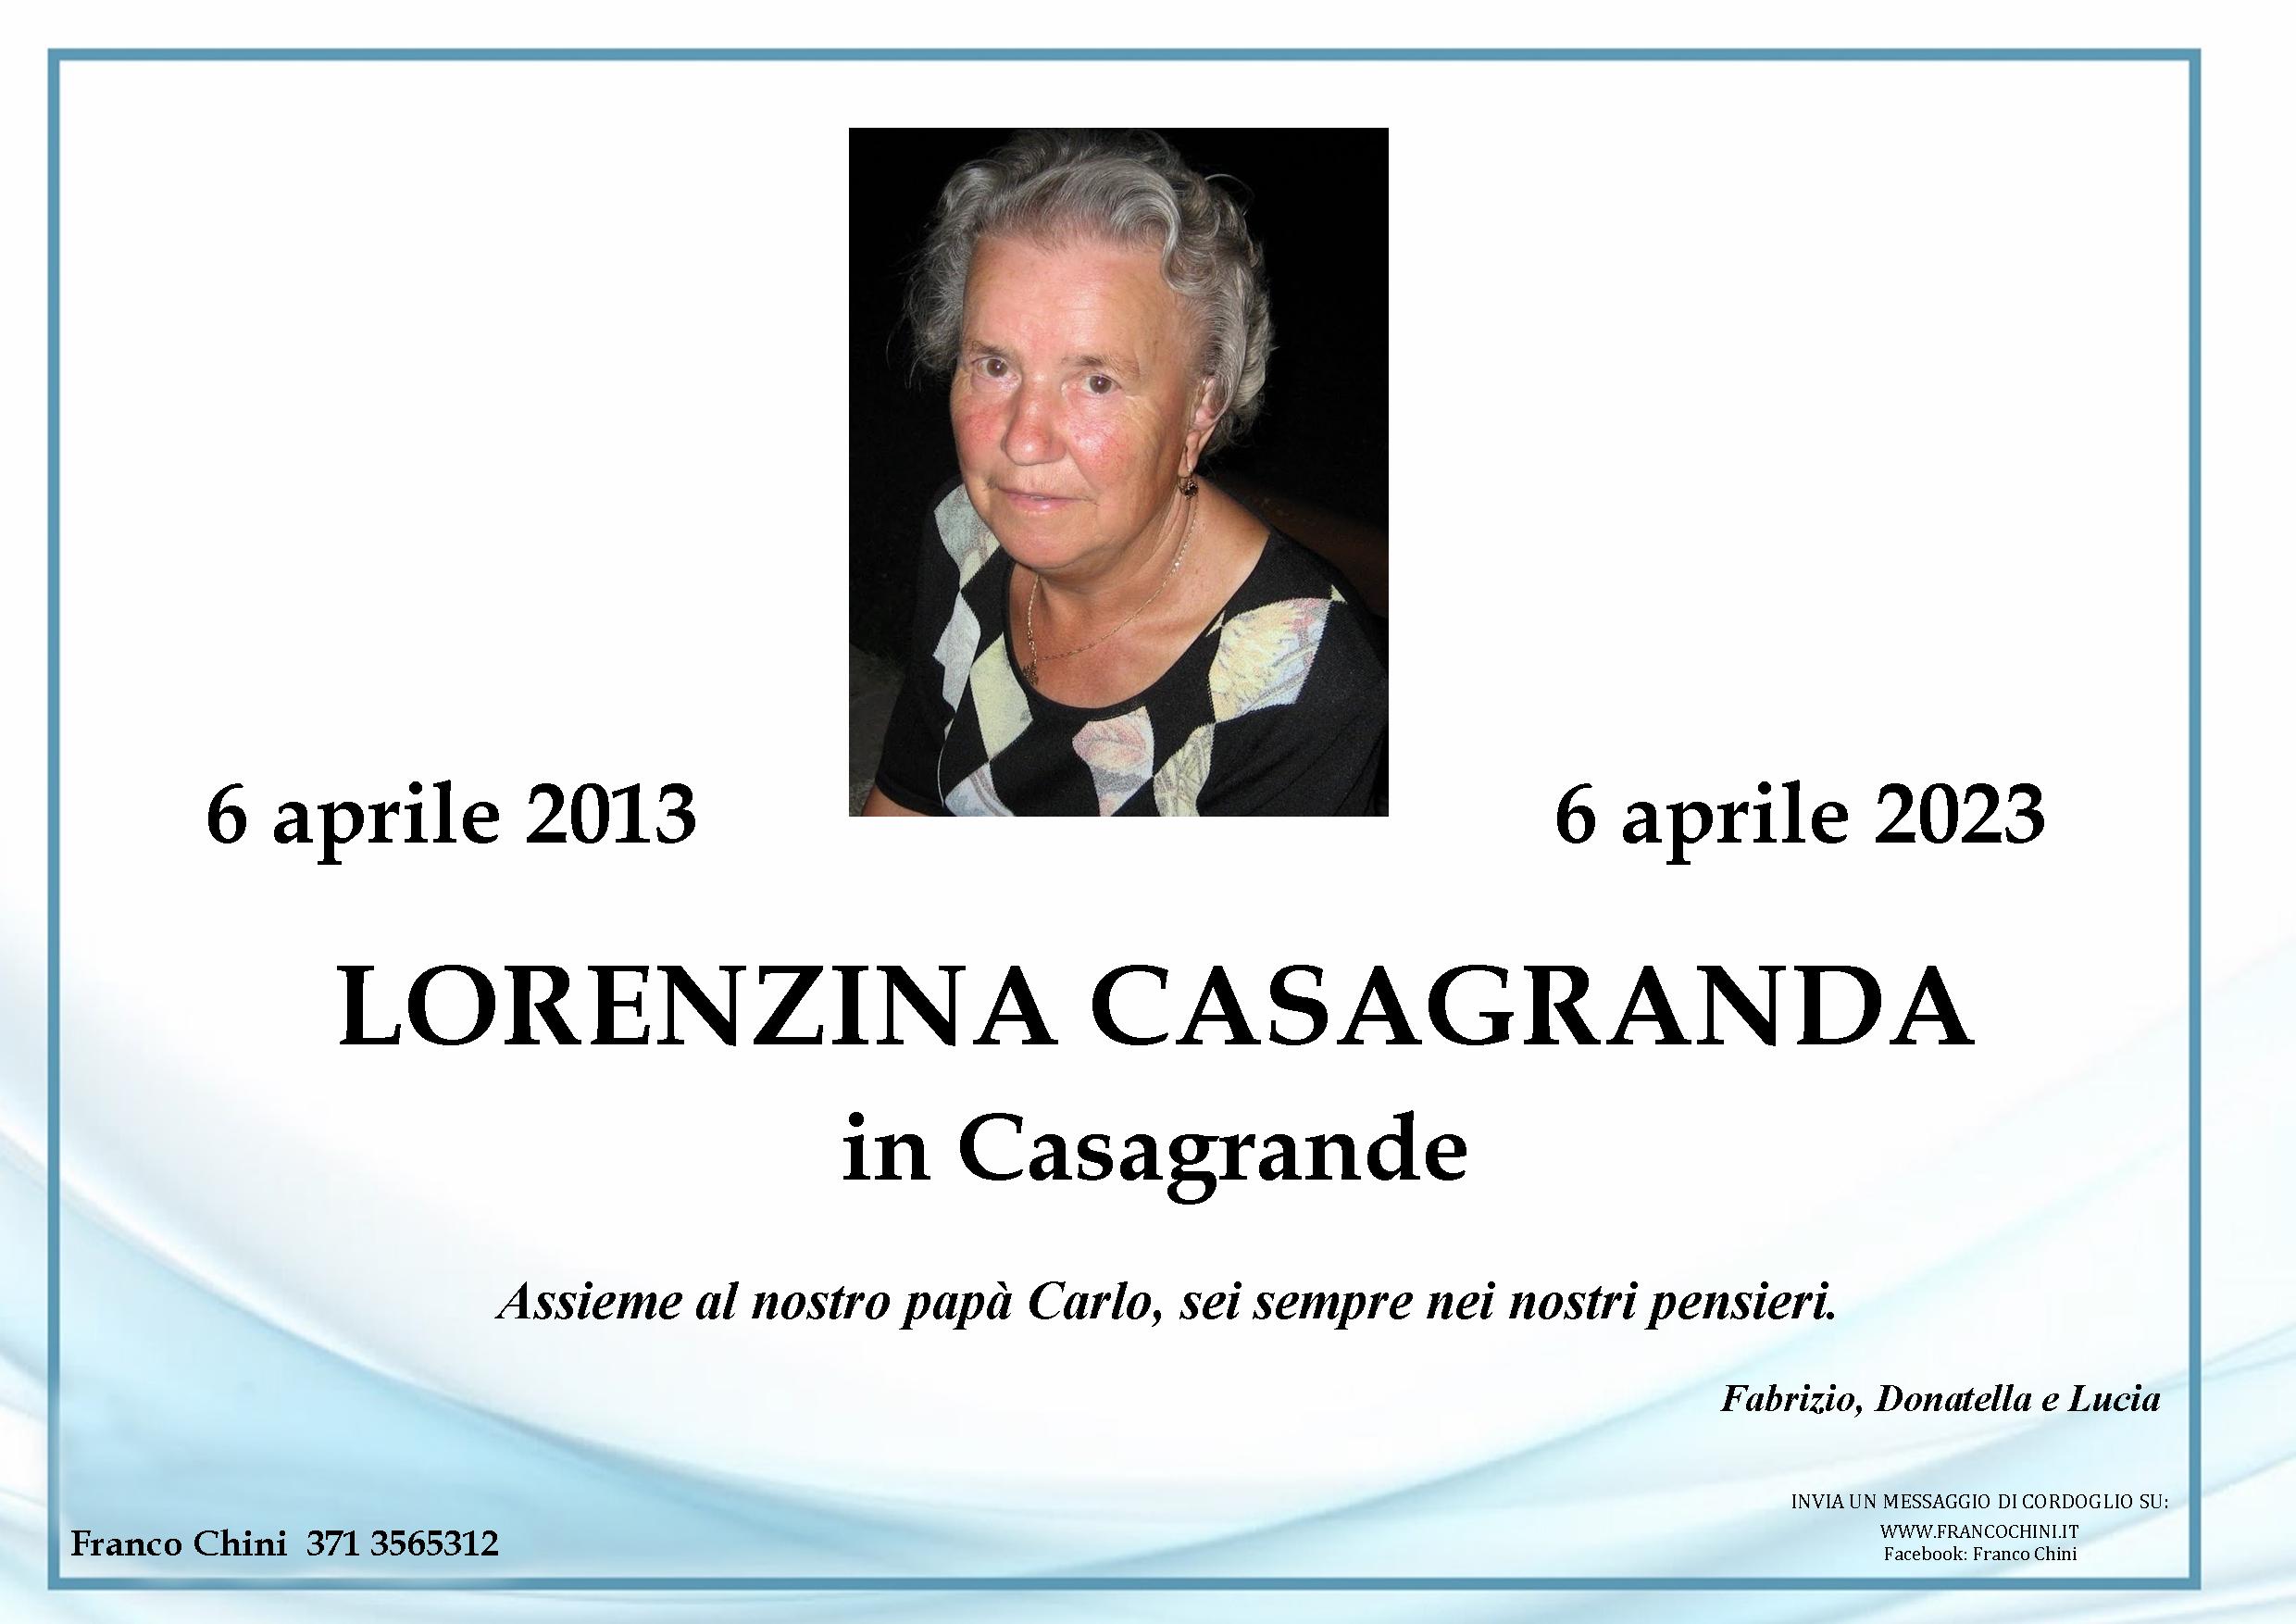 Lorenzina Casagranda